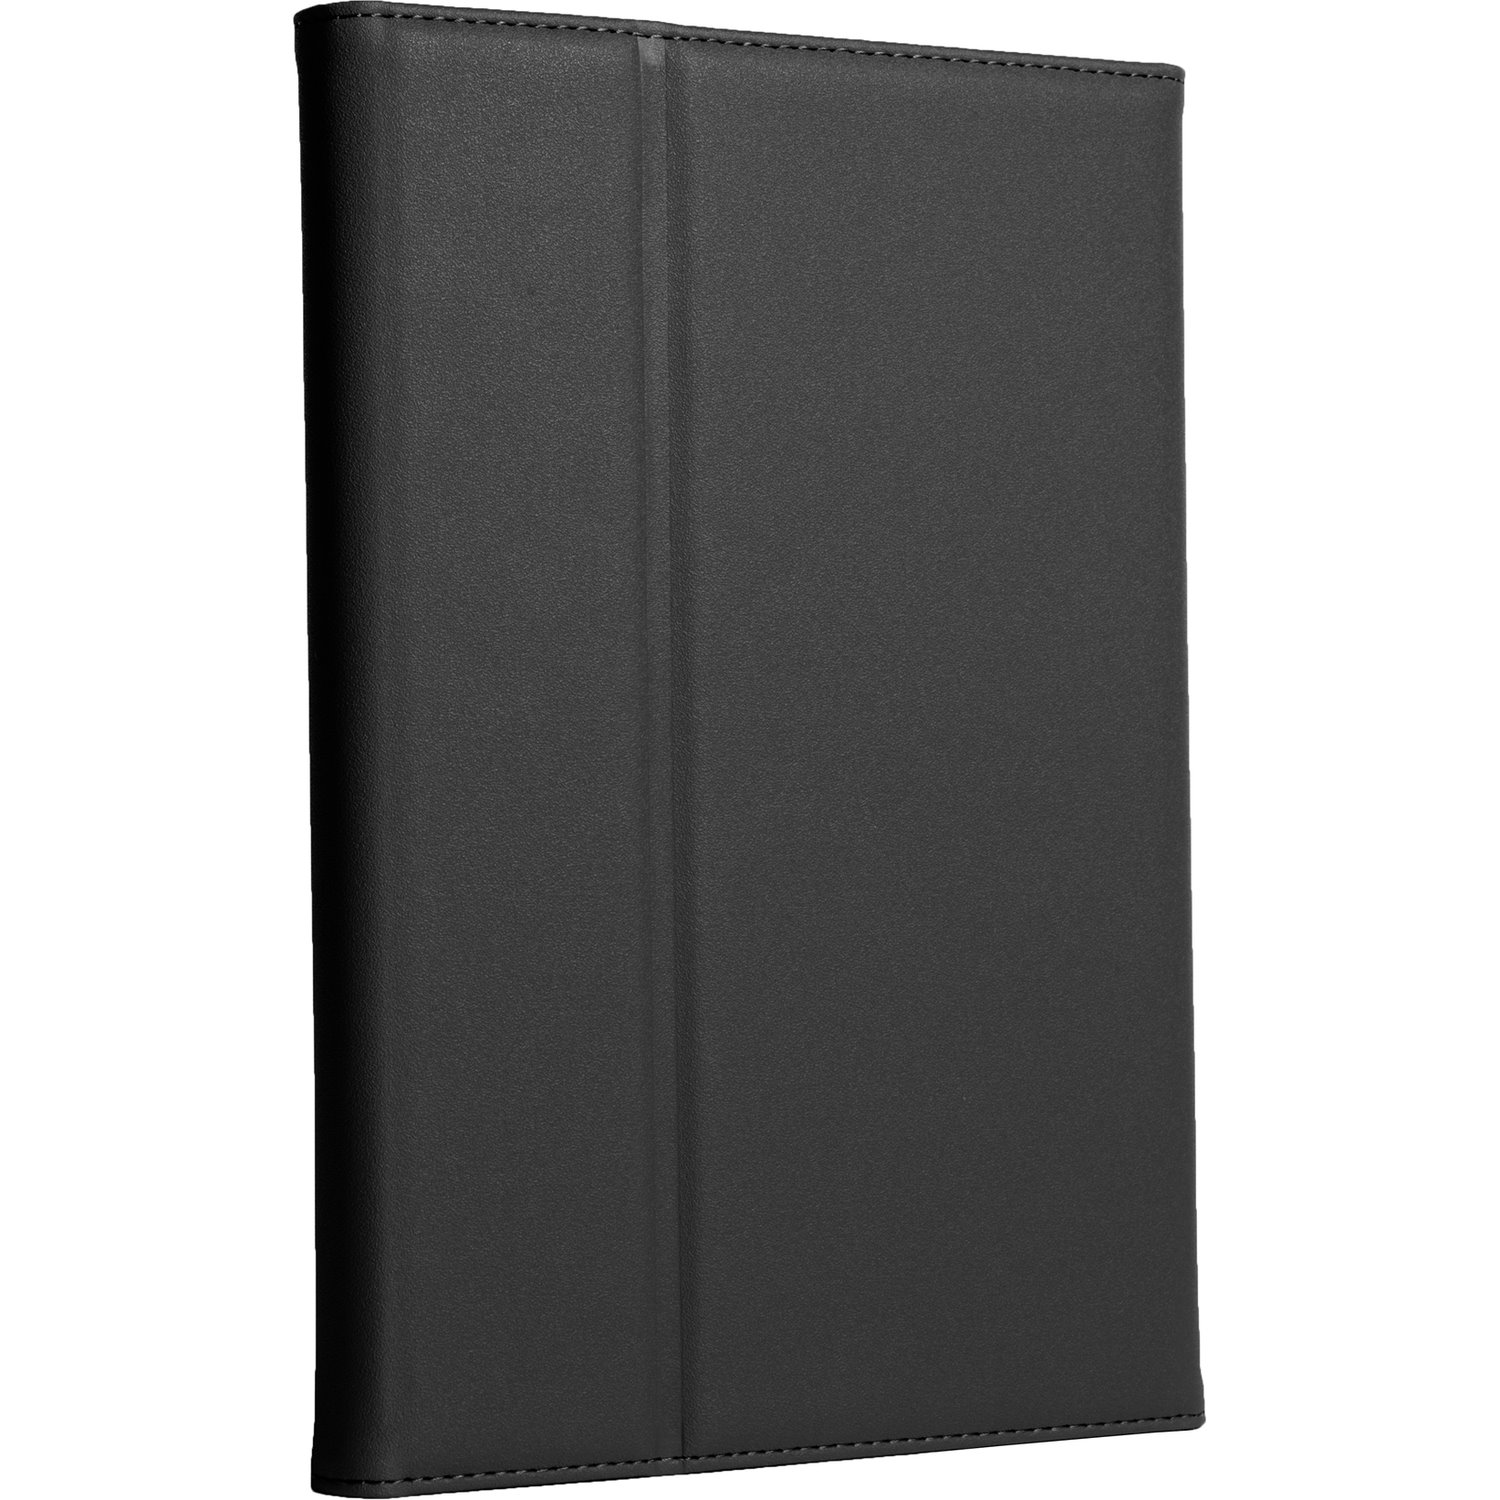 Targus Versavu Slim THZ594GL Carrying Case Apple iPad mini, iPad mini 2, iPad mini 3 Tablet - Black